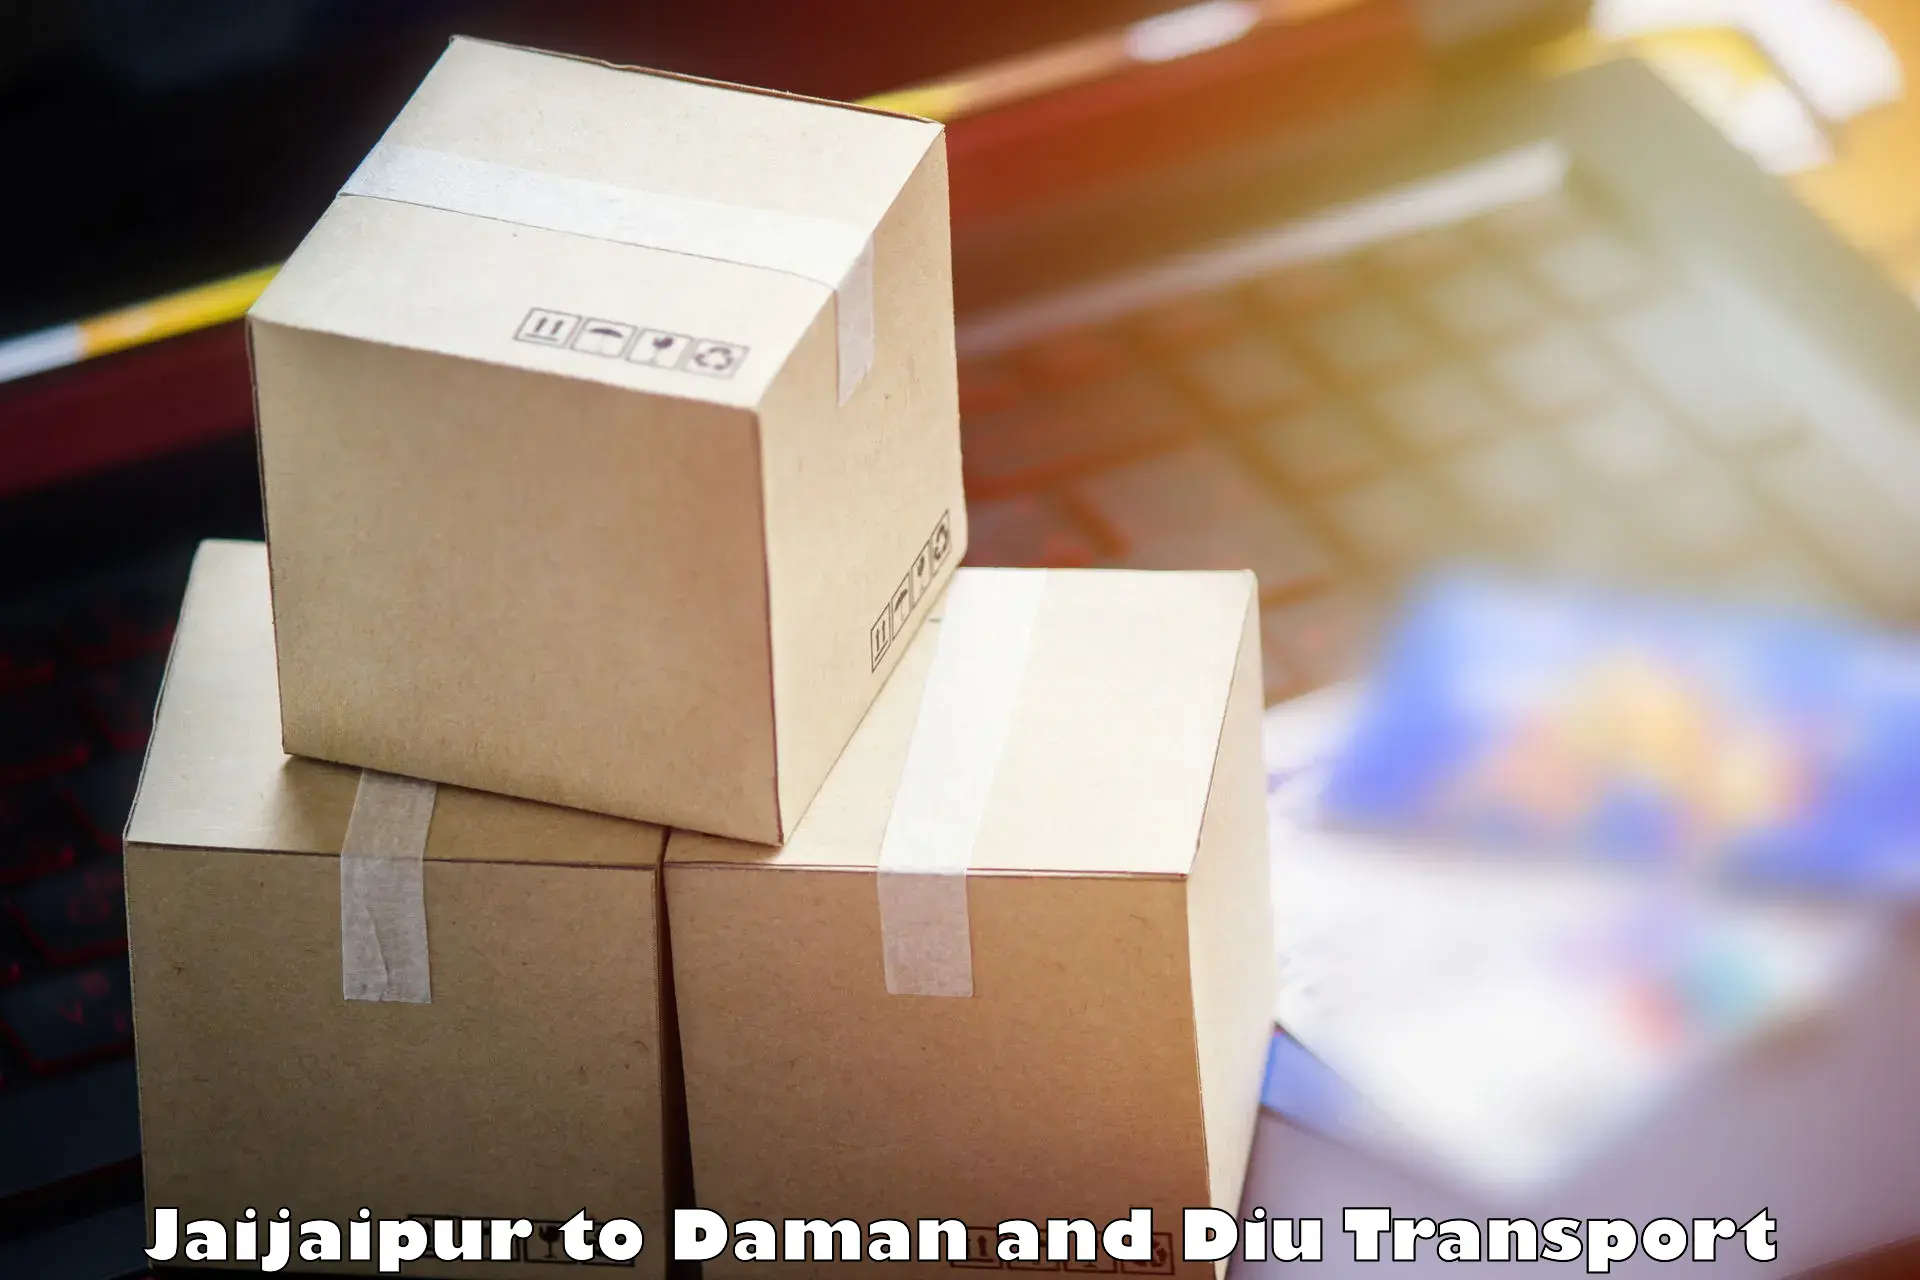 India truck logistics services Jaijaipur to Daman and Diu